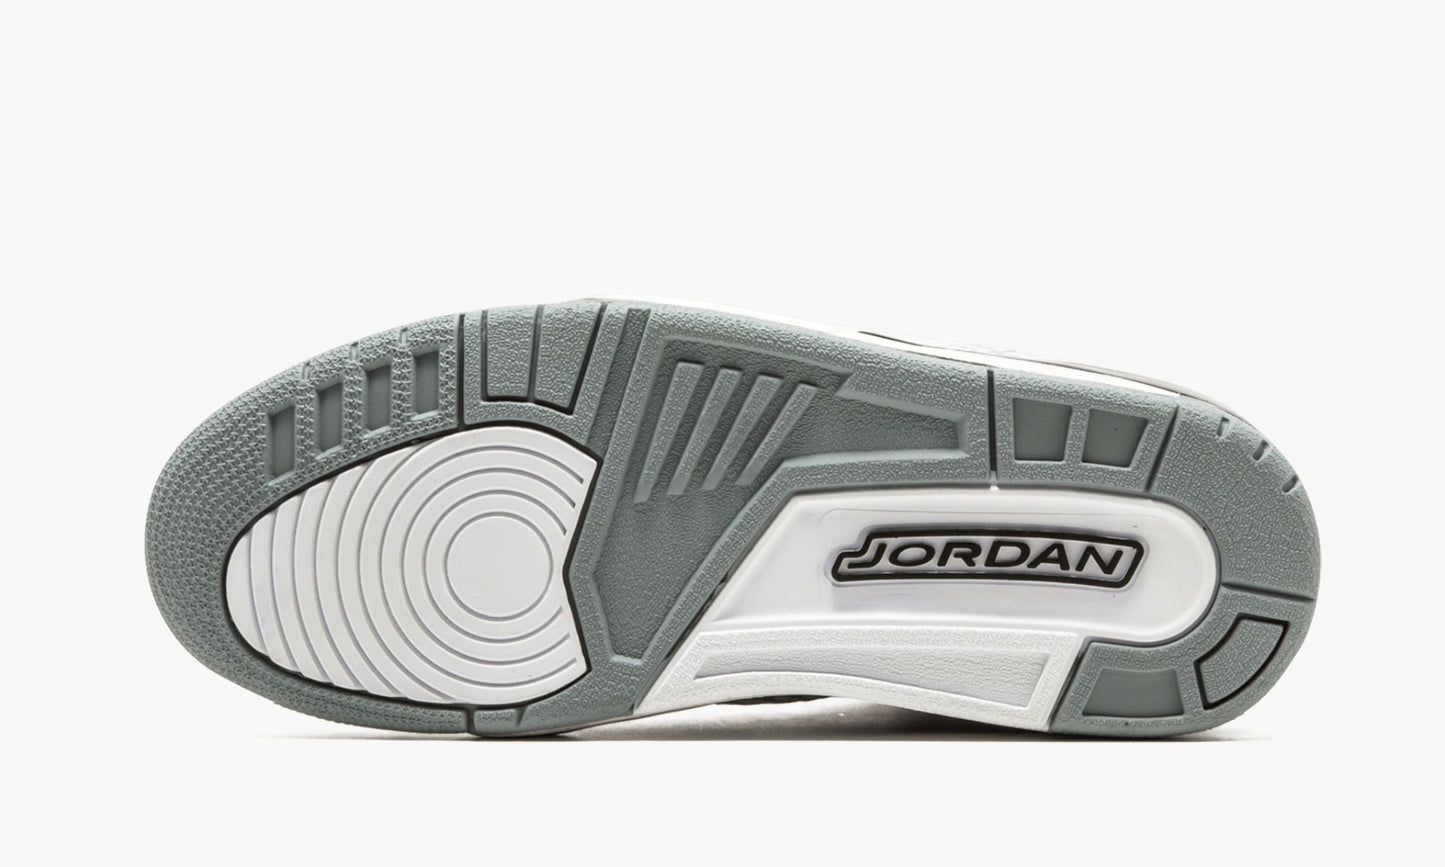 Air Jordan Retro 3 Flip "Flip"